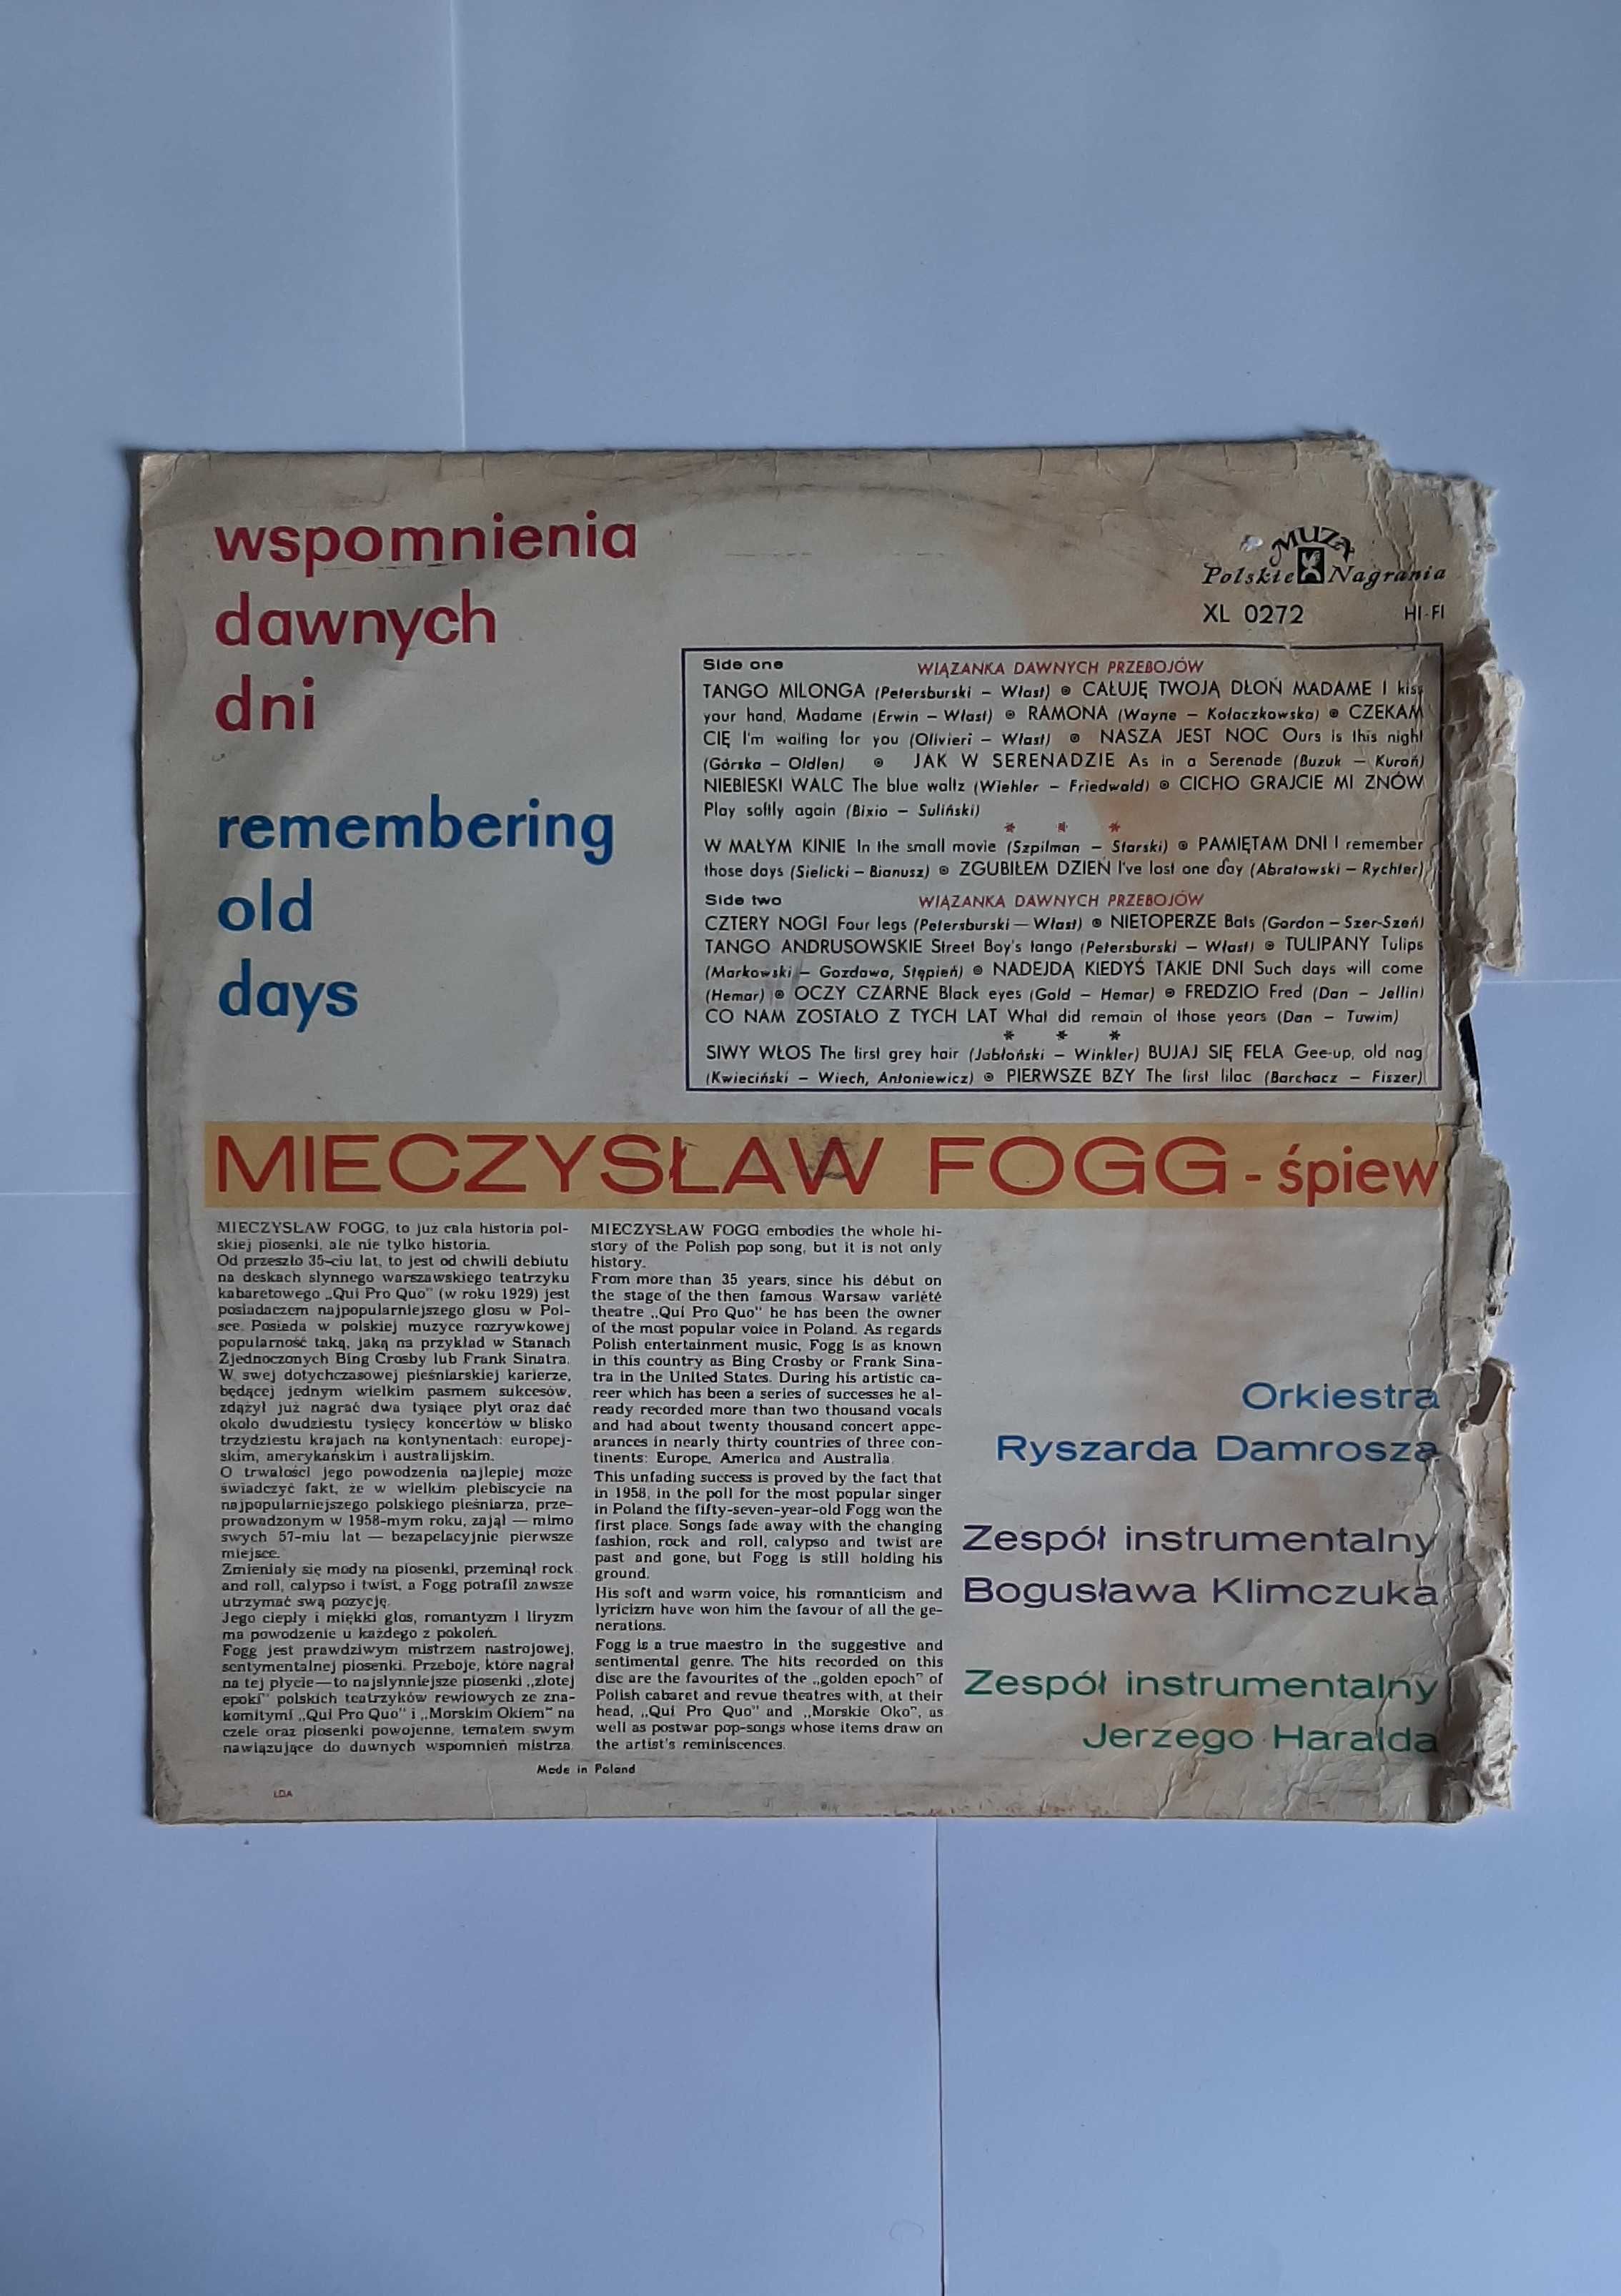 Mieczysław Fogg – Wspomnienia Dawnych Dni (Remembering Old Days)